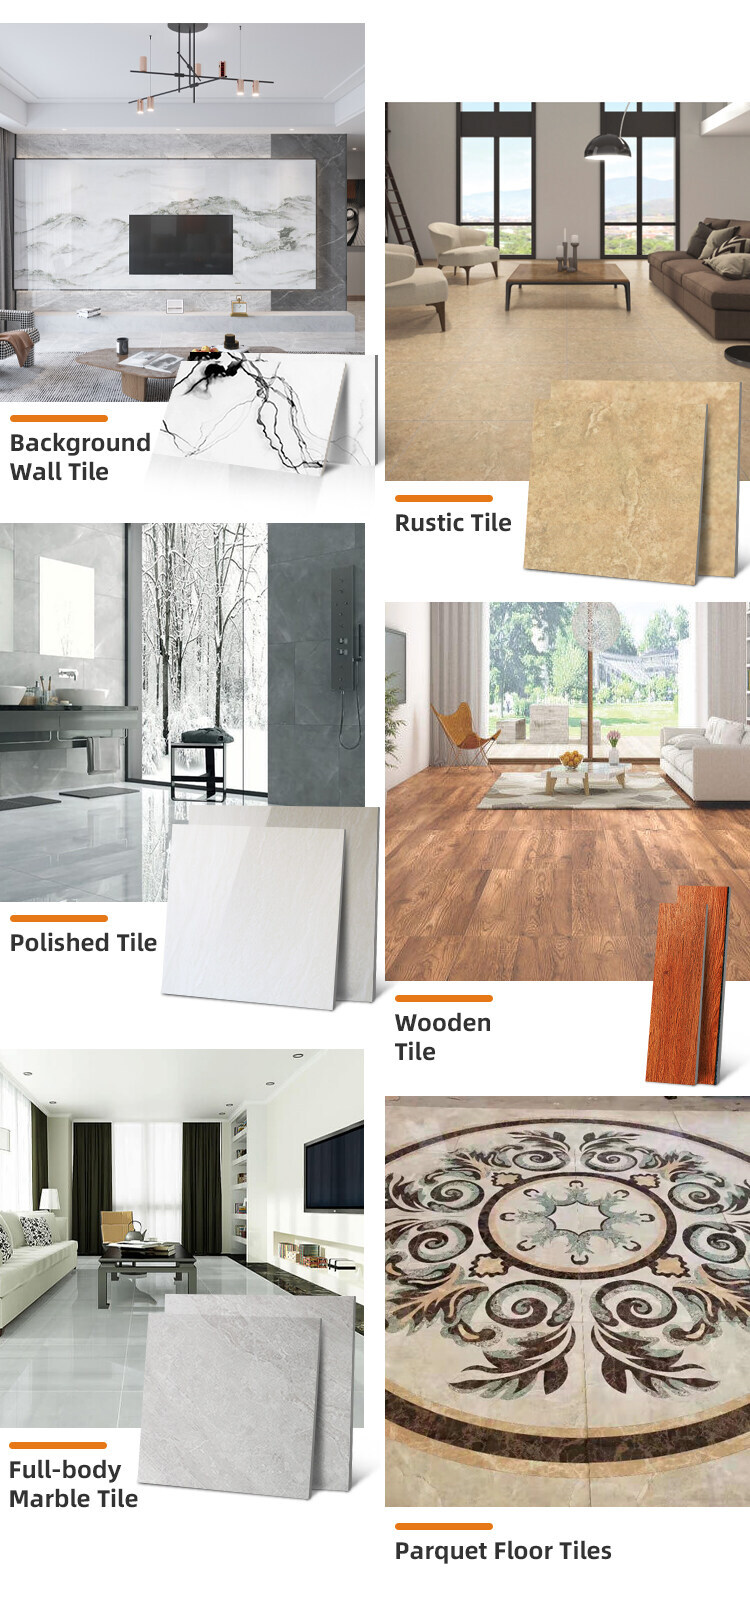 Wear-resistant Polished Non-slip Floor Marble Tiles Indoor Wooden Appearance Floor Crema Marfil Tile Marble Tile Tile of the Year: Crema Marfil Tile Crema Marfil Tile,Marble Tile